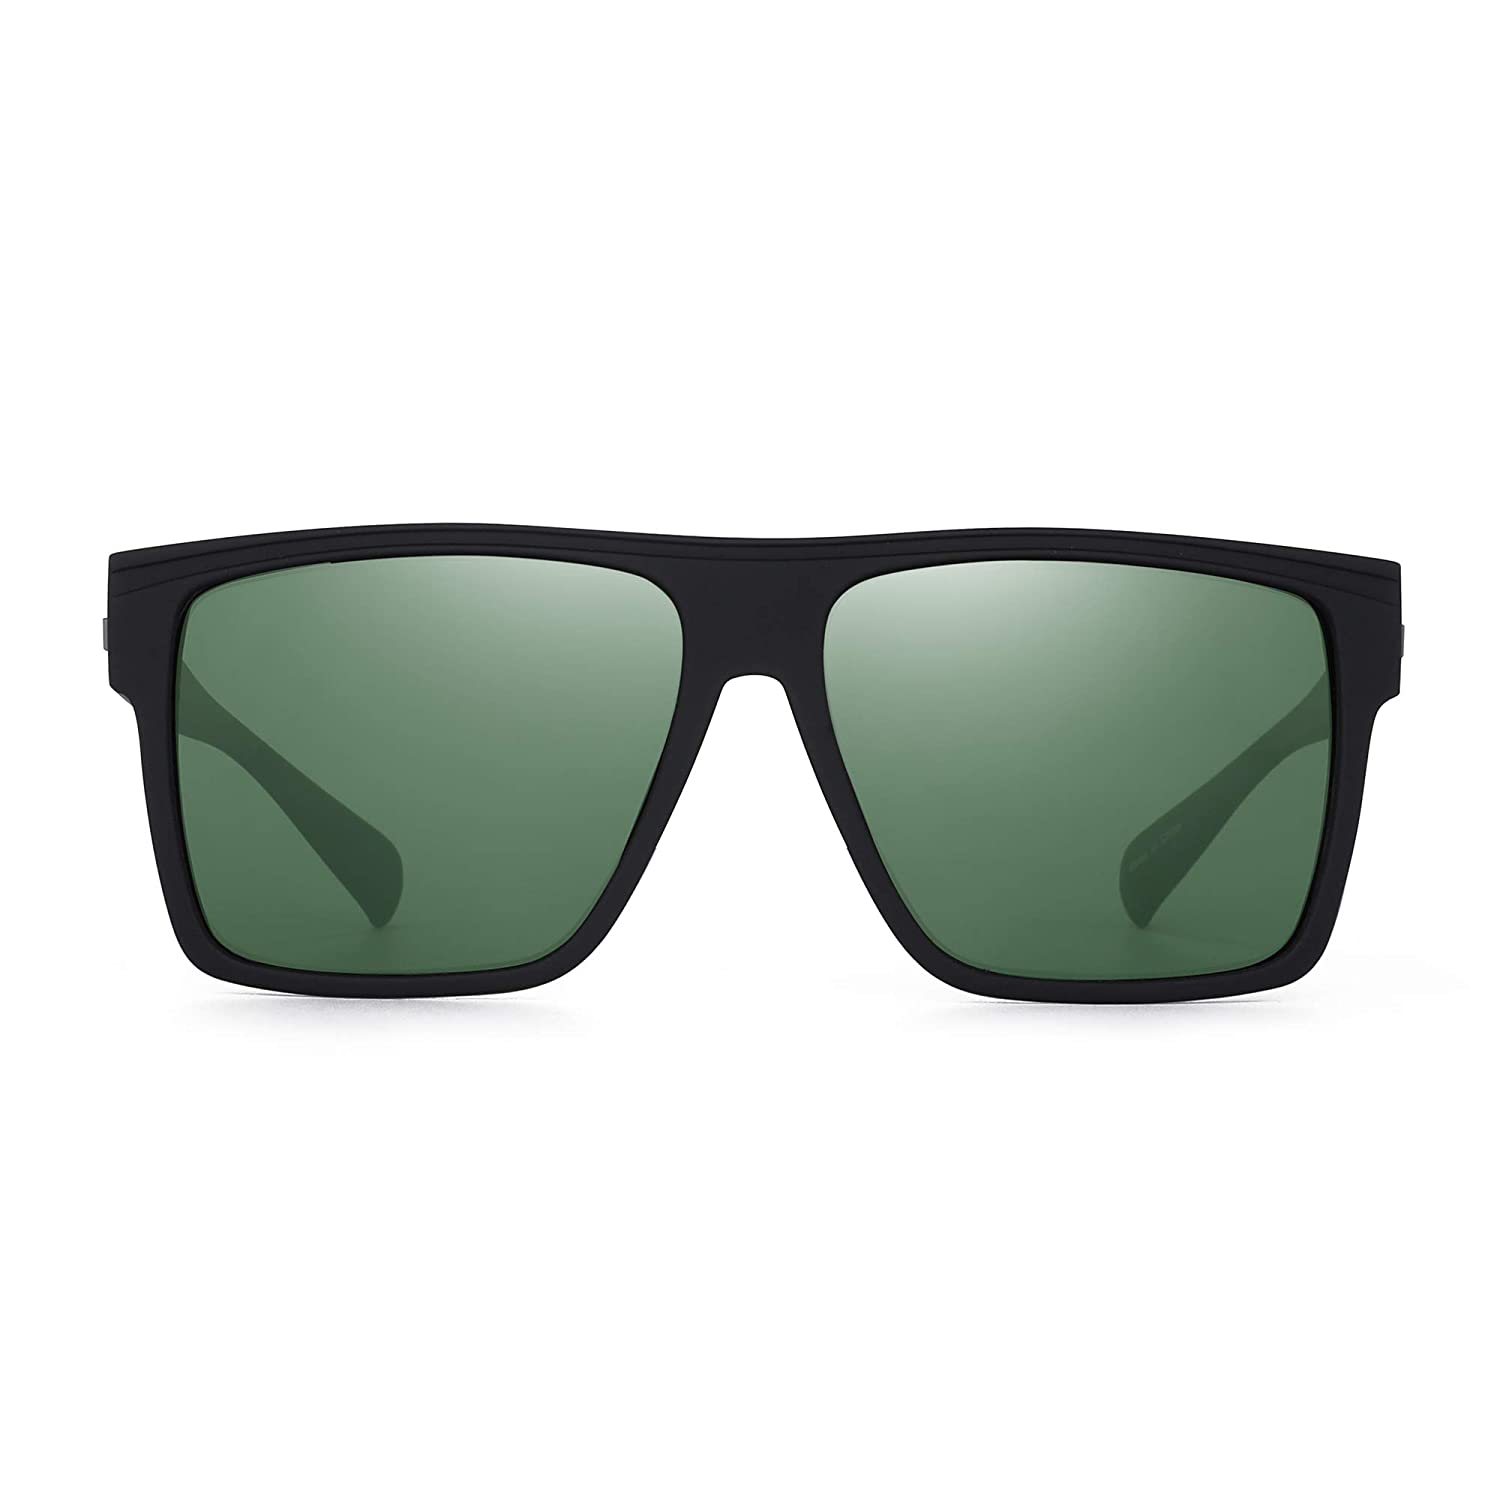 Buy GAINX Retro Rectangular Aviator Sunglasses Premium Glass Lens